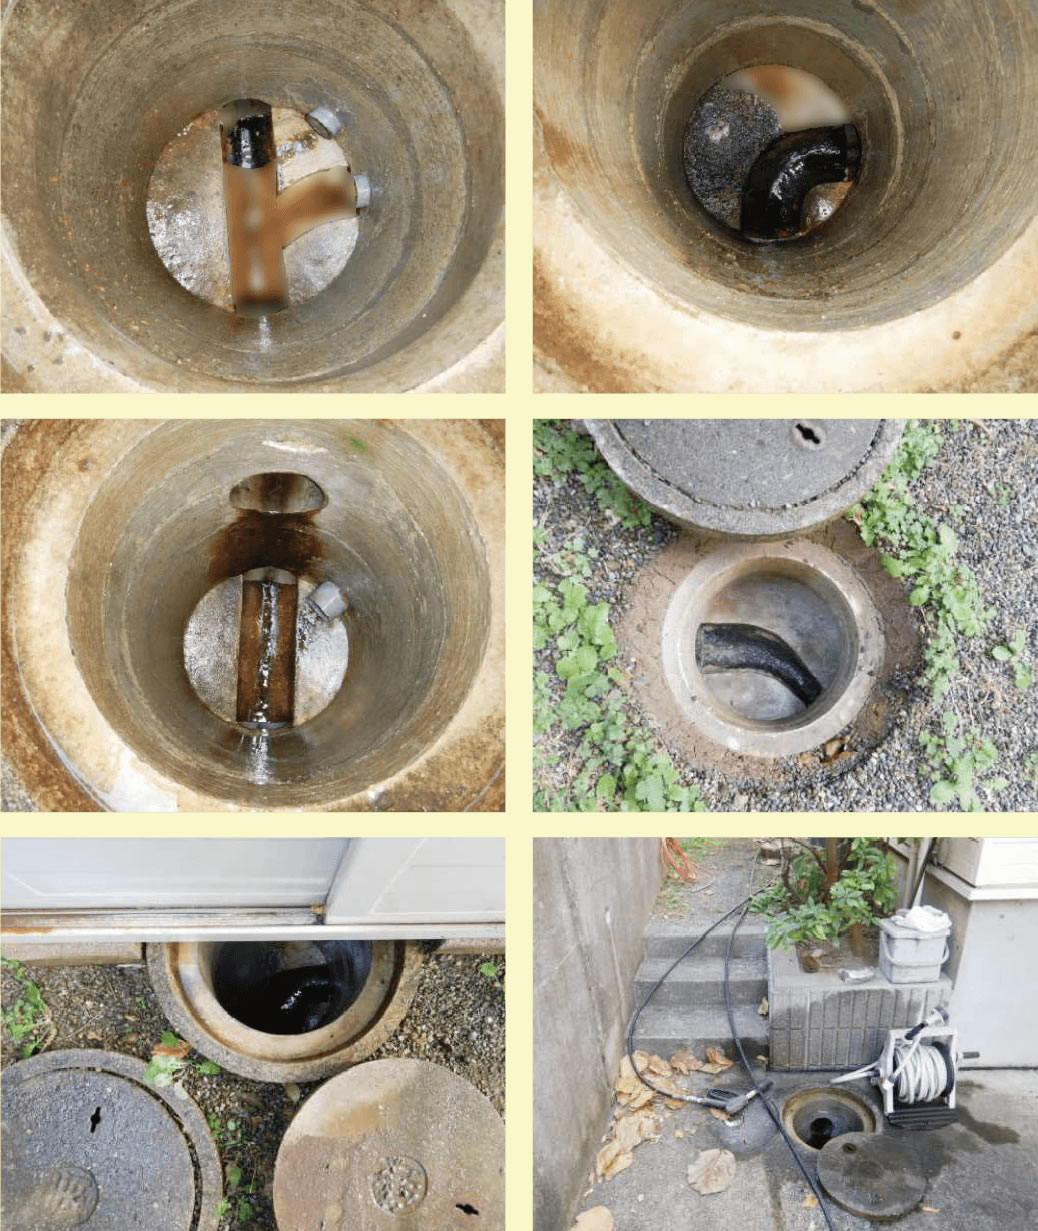 高圧洗浄機による排水管清掃